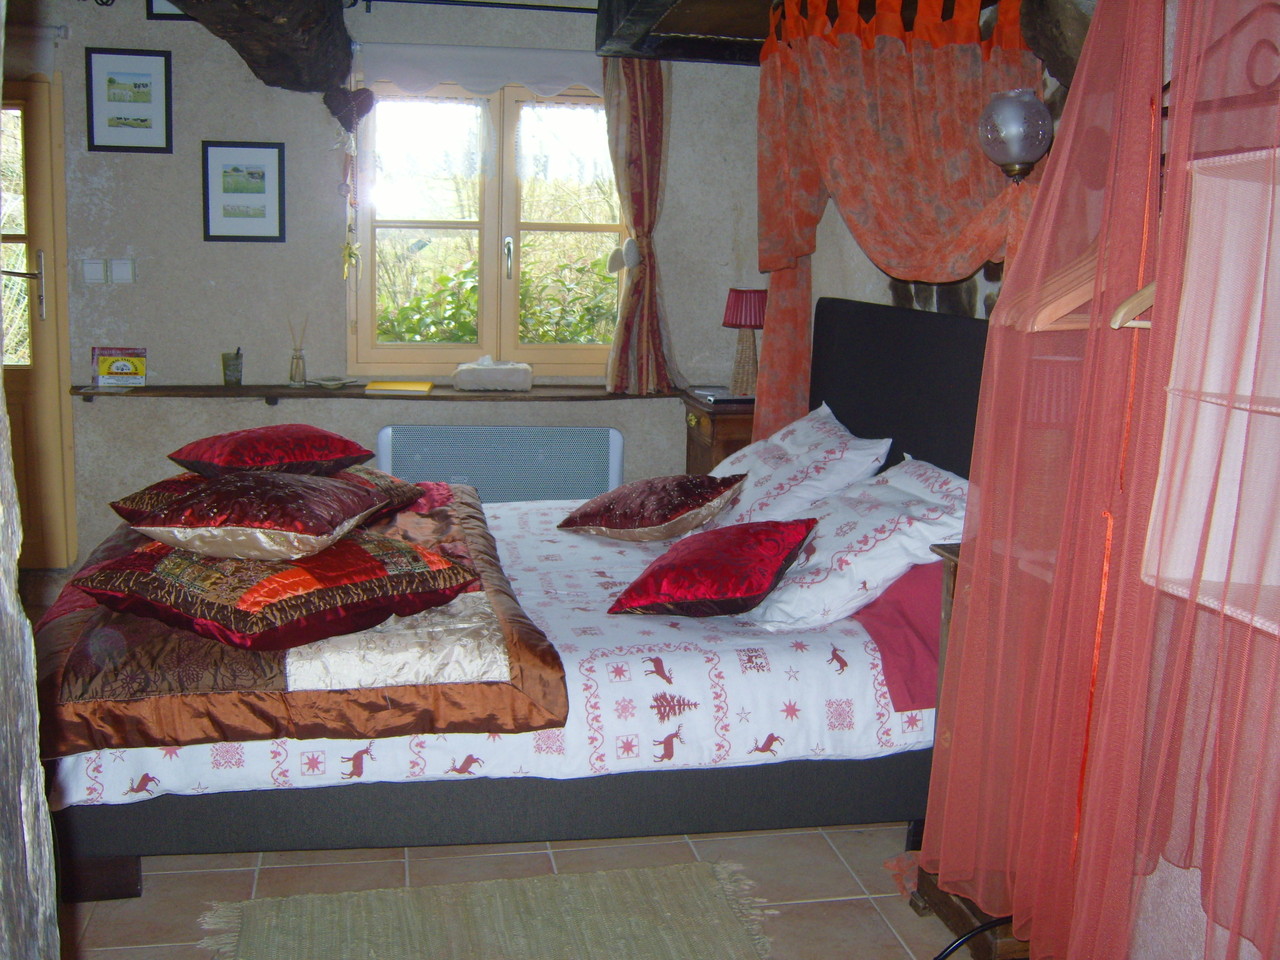 le lit est installé dans l'ancienne cheminée conservée avec sa hotte en torchis